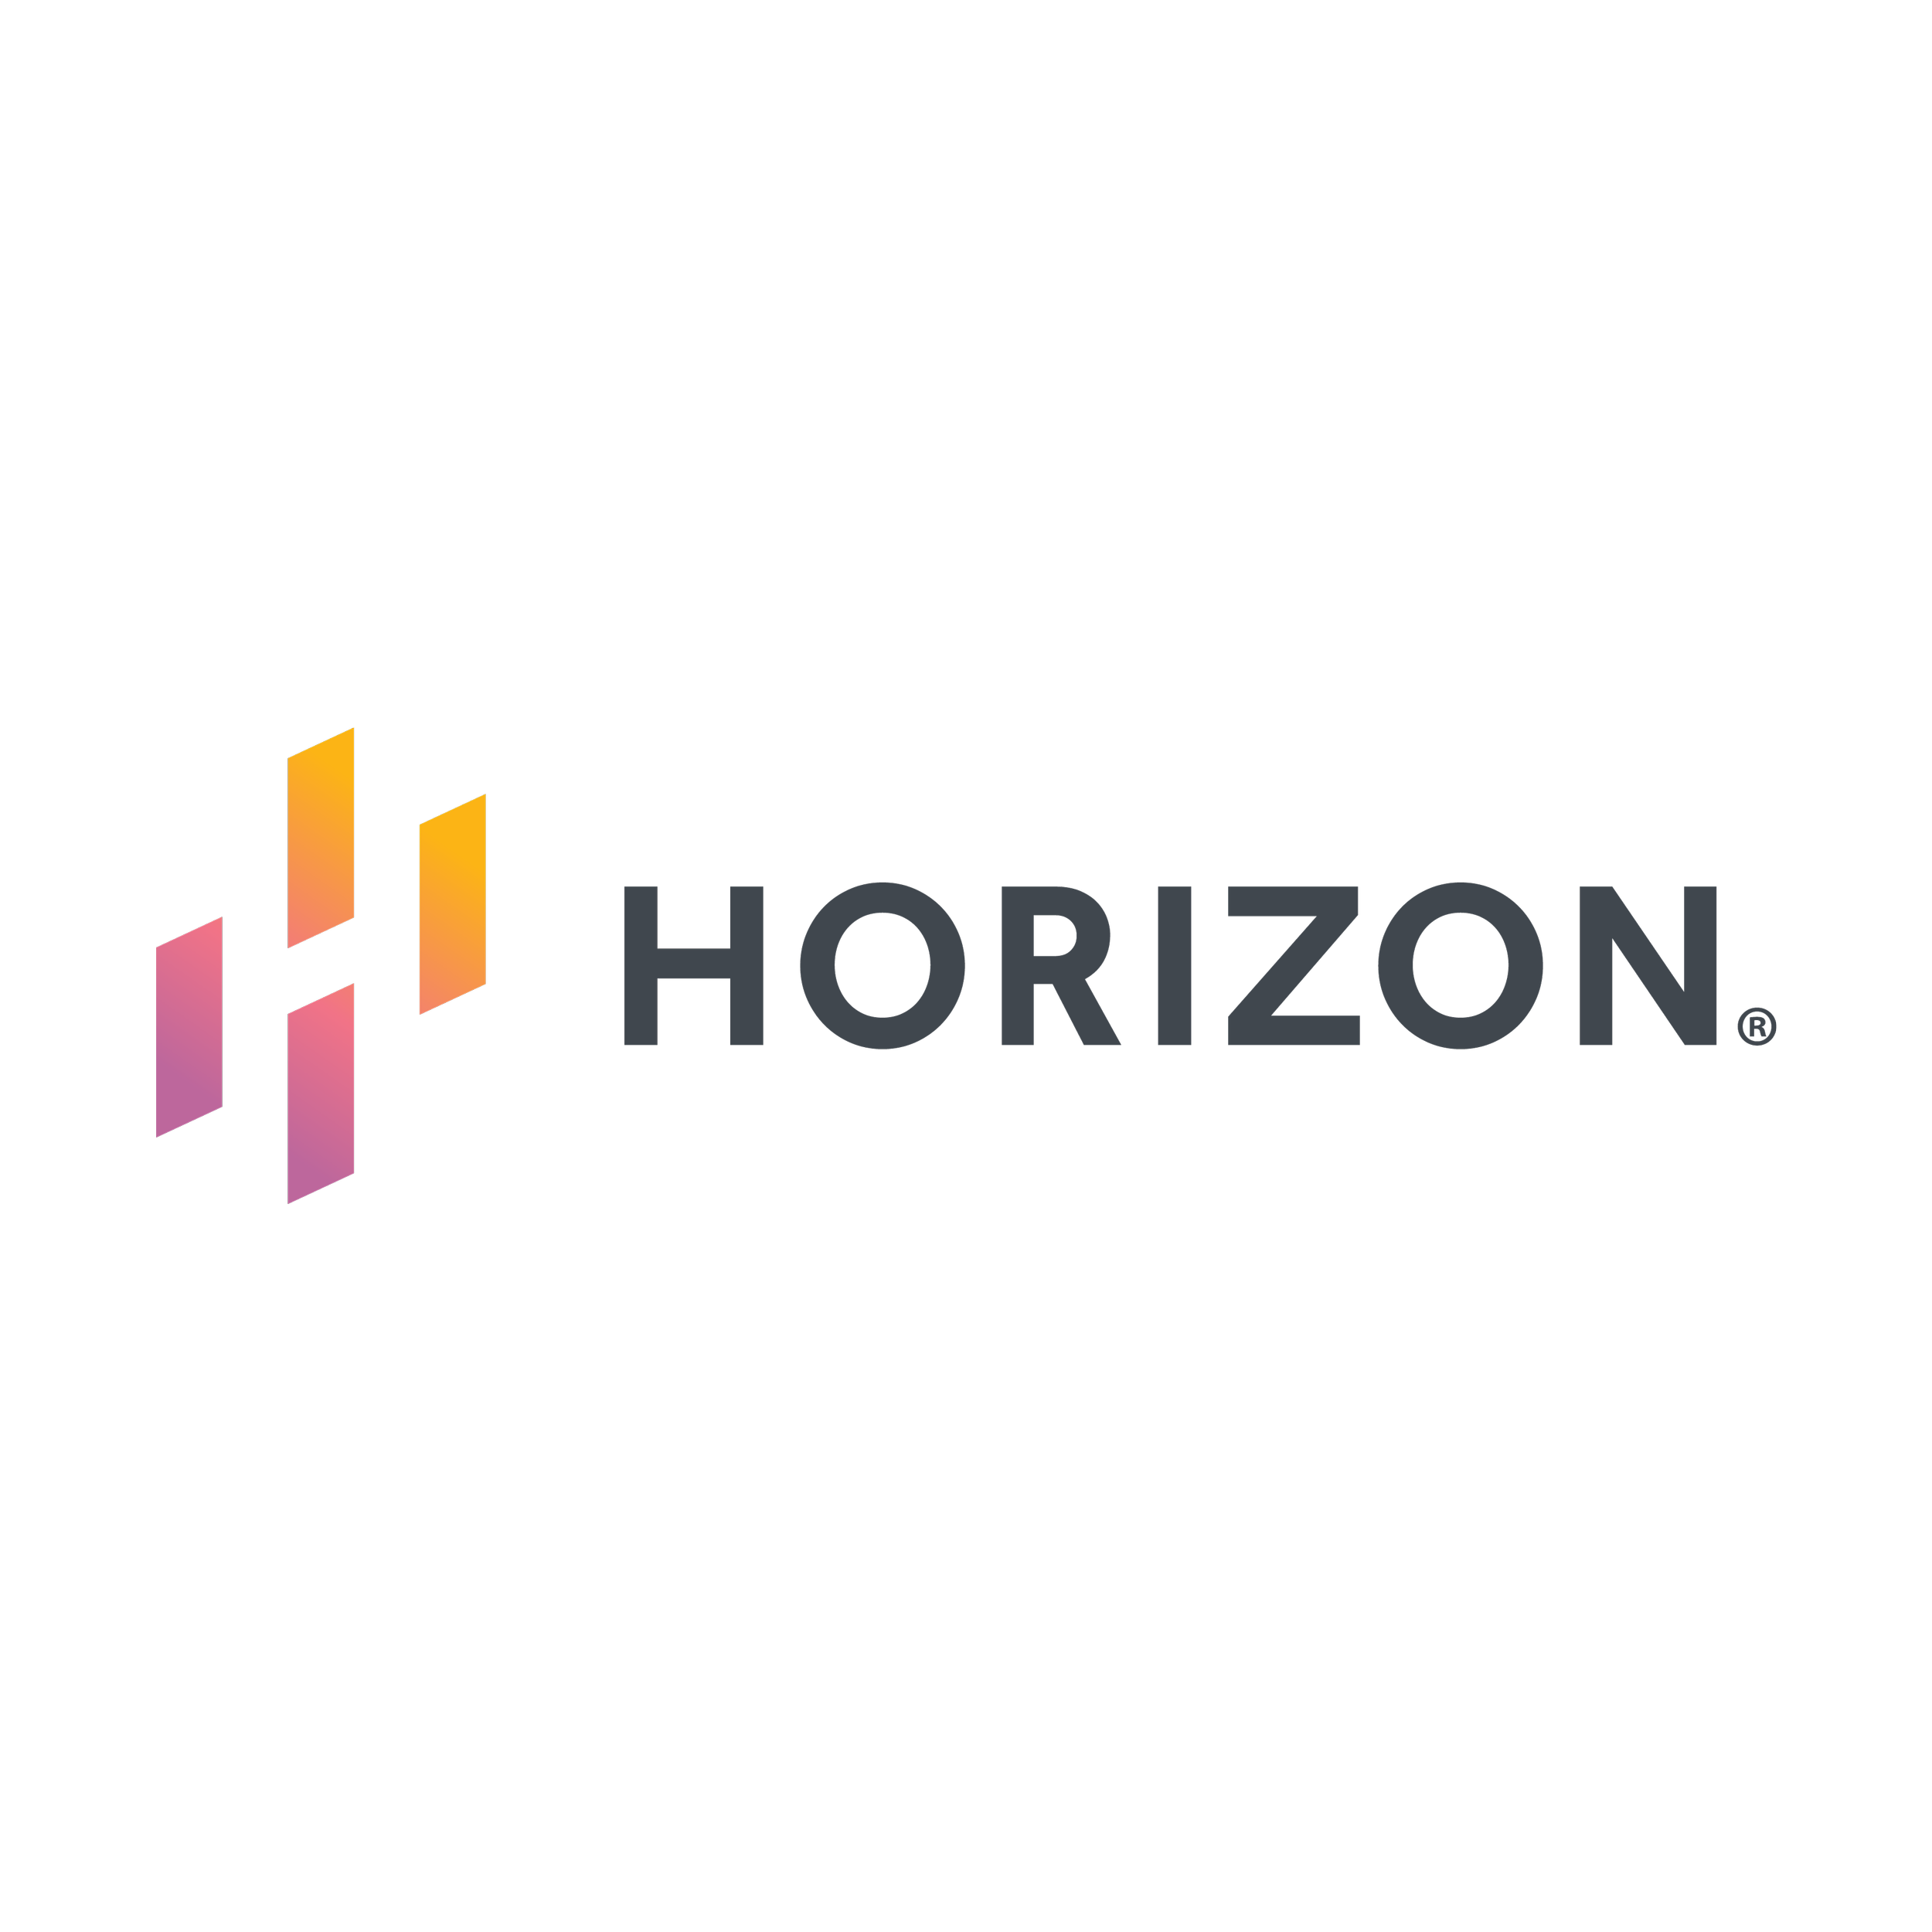 horizon logo.png